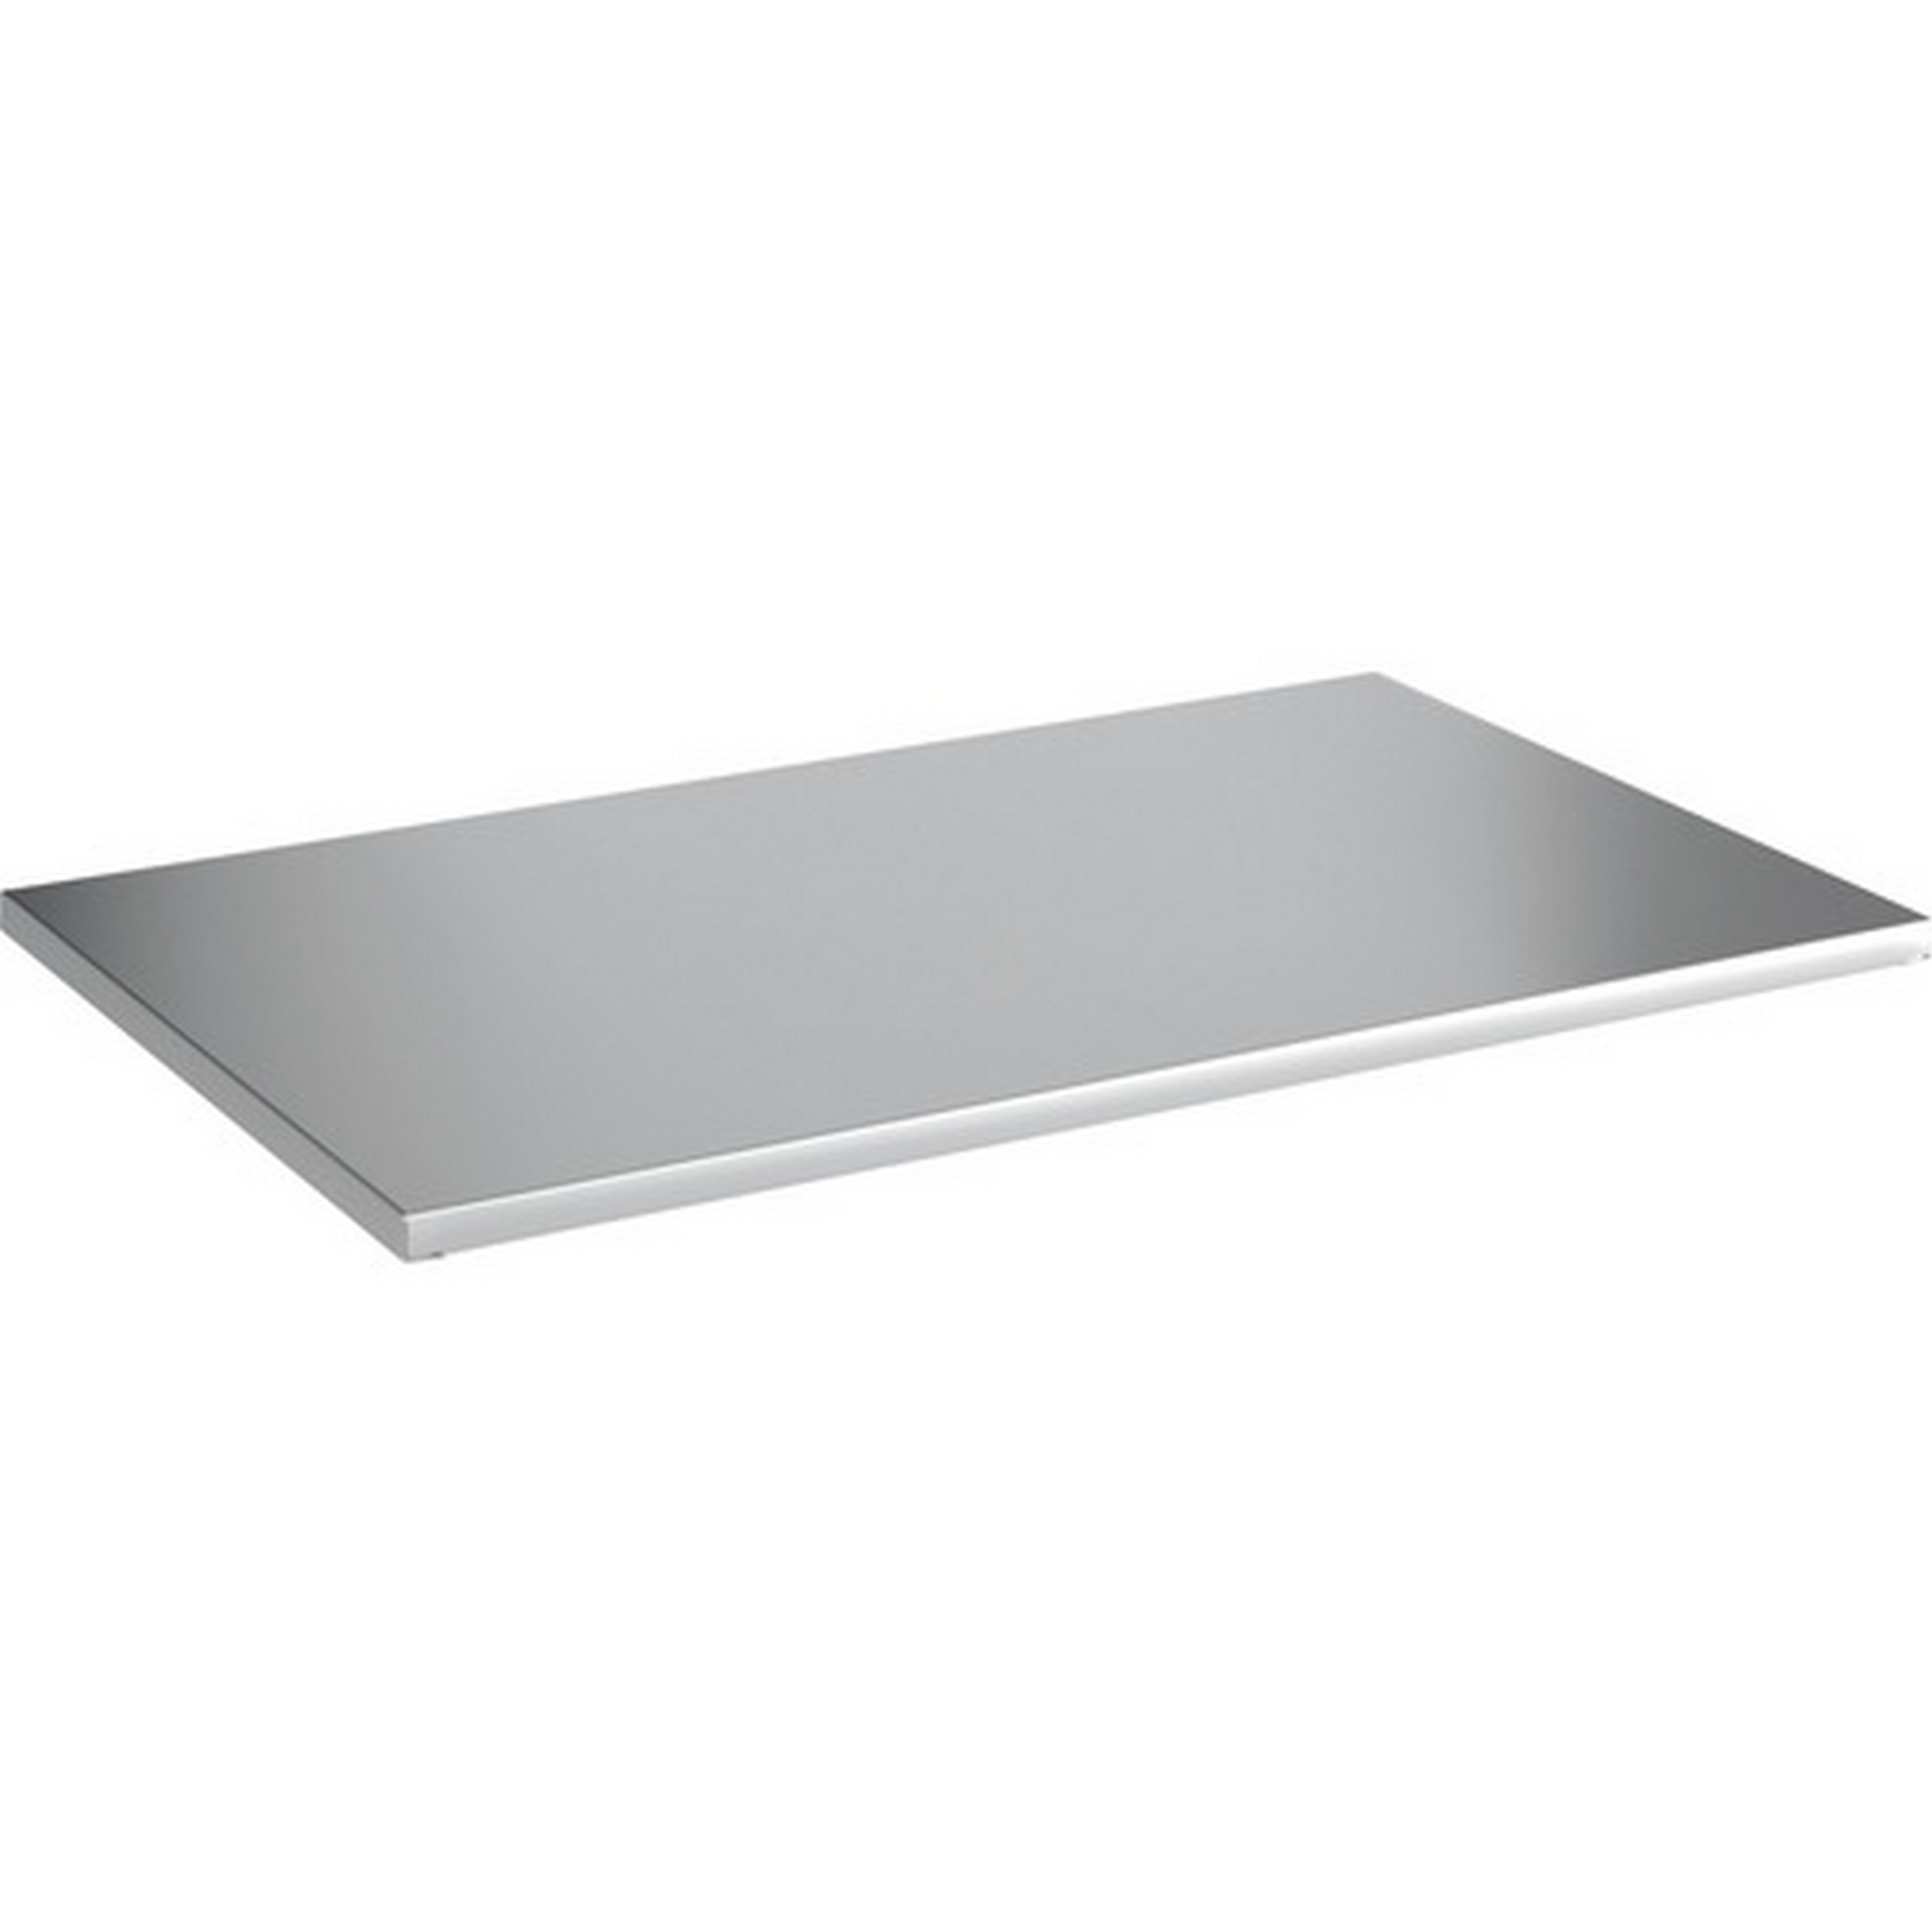 60 cm Metall Stecksystem-Regalboden x 50